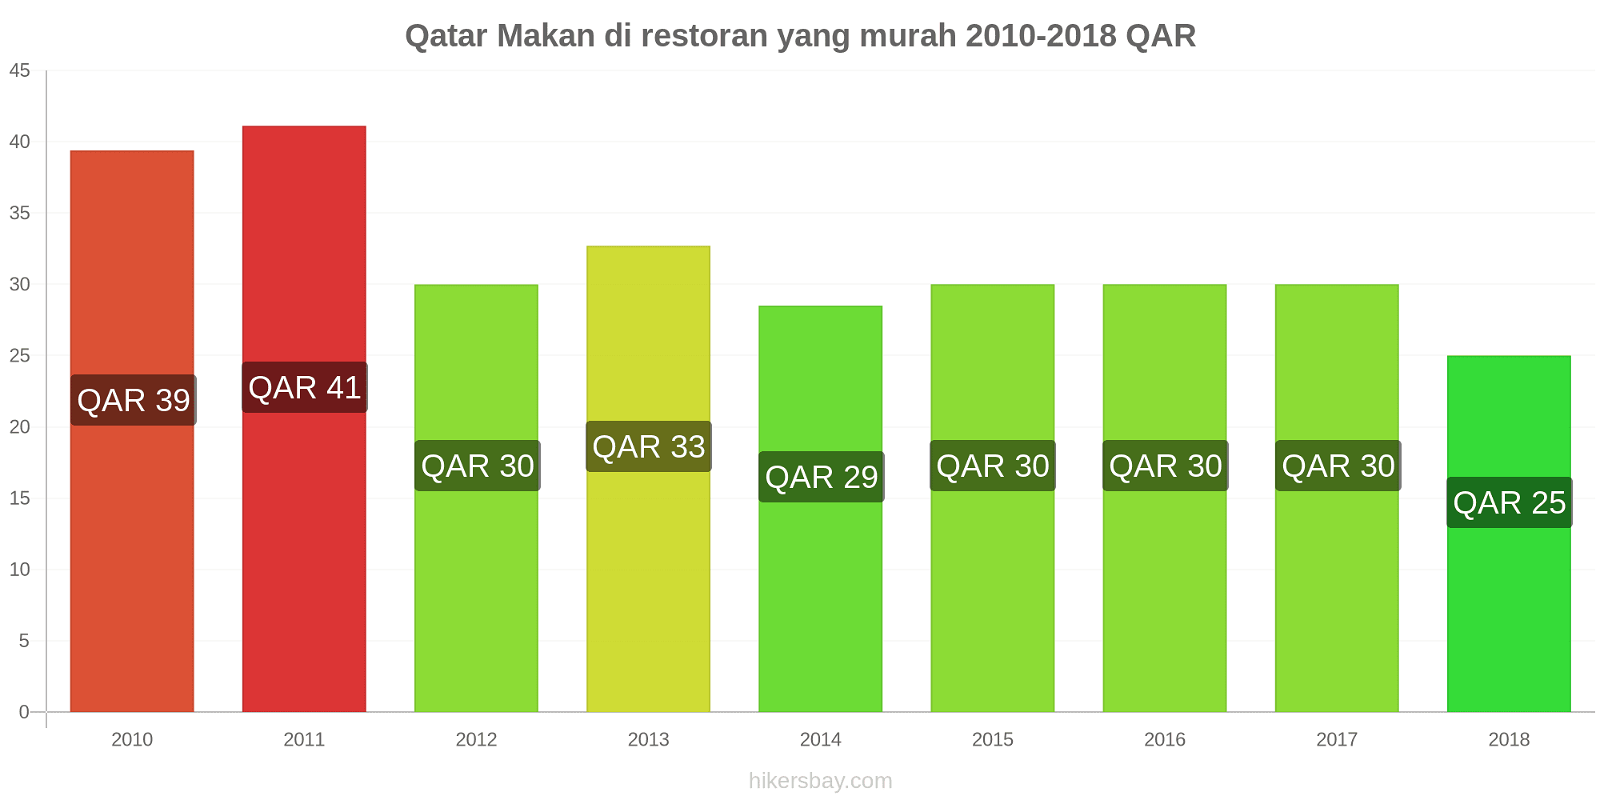 Qatar perubahan harga Makan di restoran yang terjangkau hikersbay.com